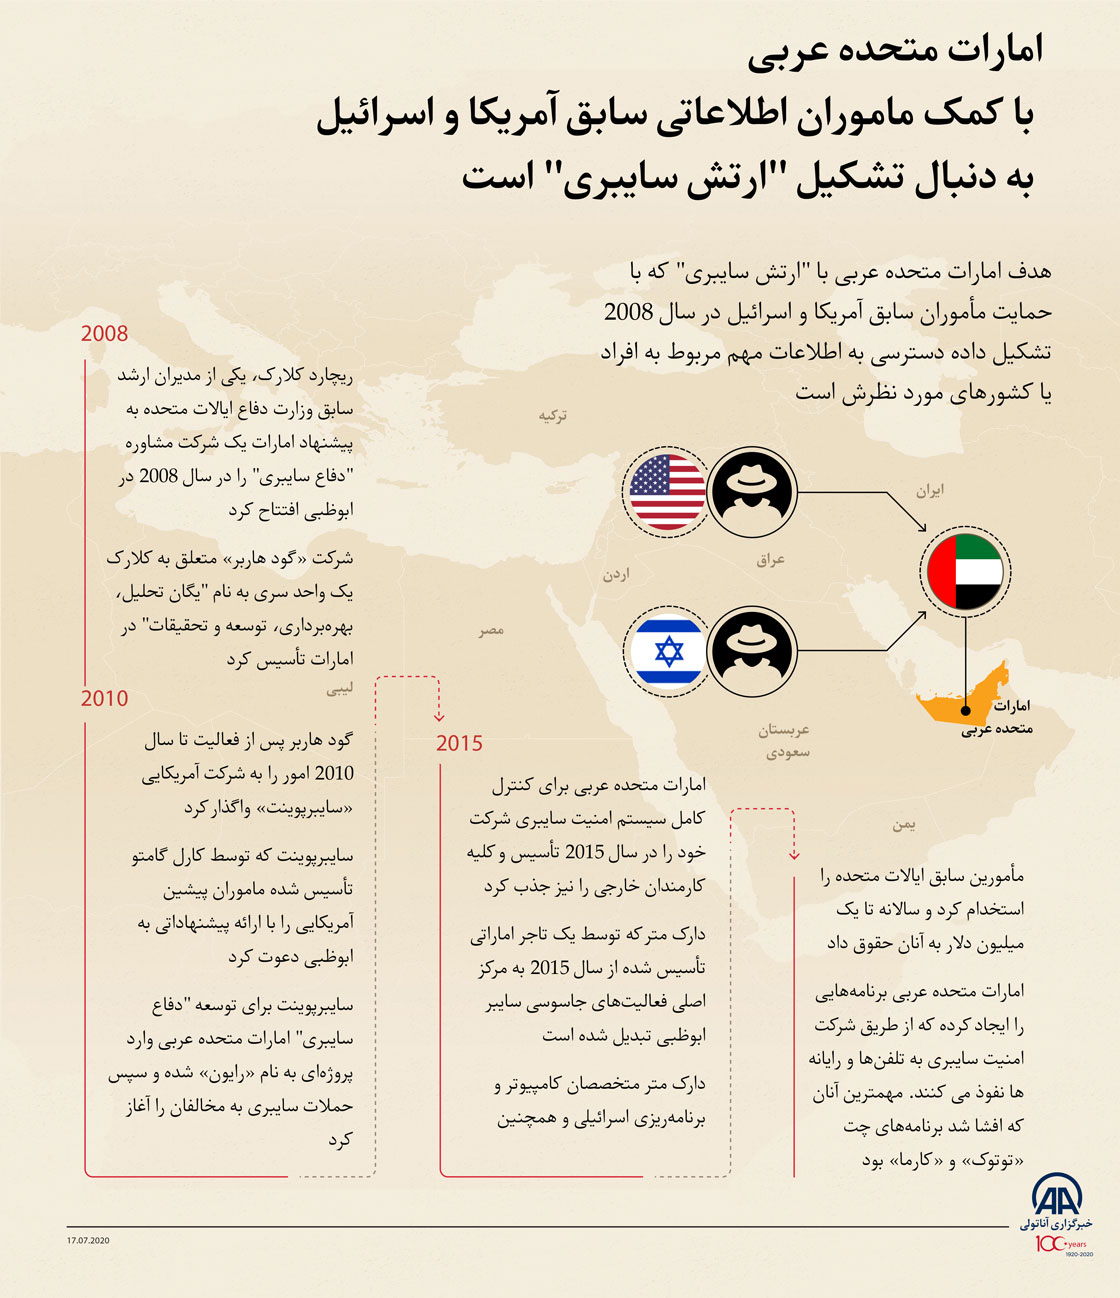 امارات متحده عربی با کمک ماموران اطلاعاتی سابق آمریکا و اسرائیل به دنبال تشکیل "ارتش سایبری" است